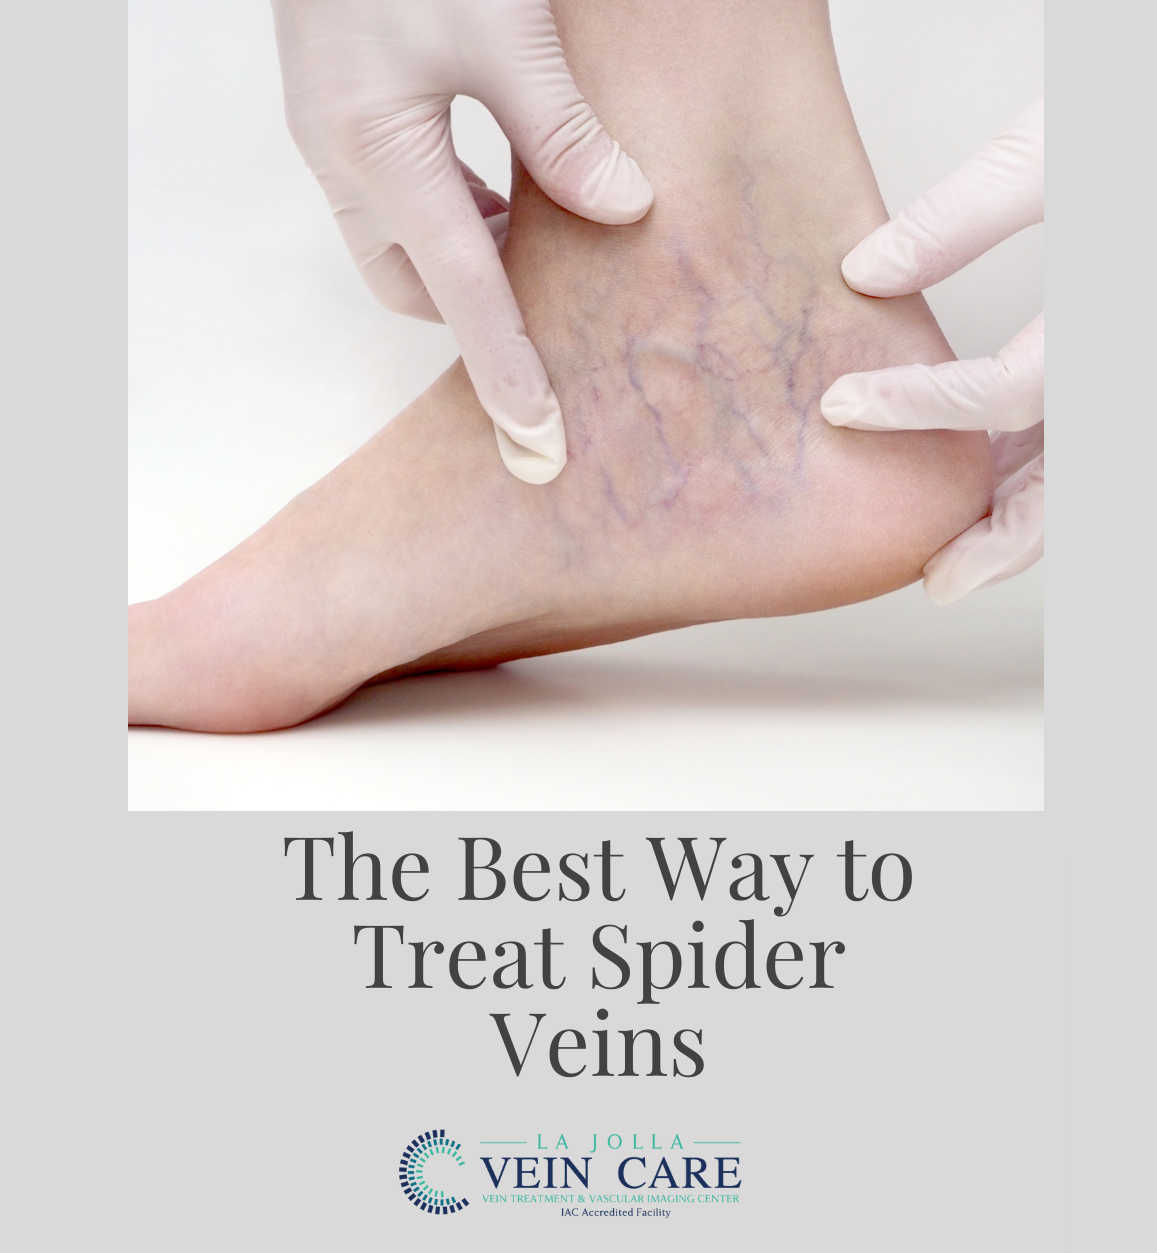 The best way to treat spider veins